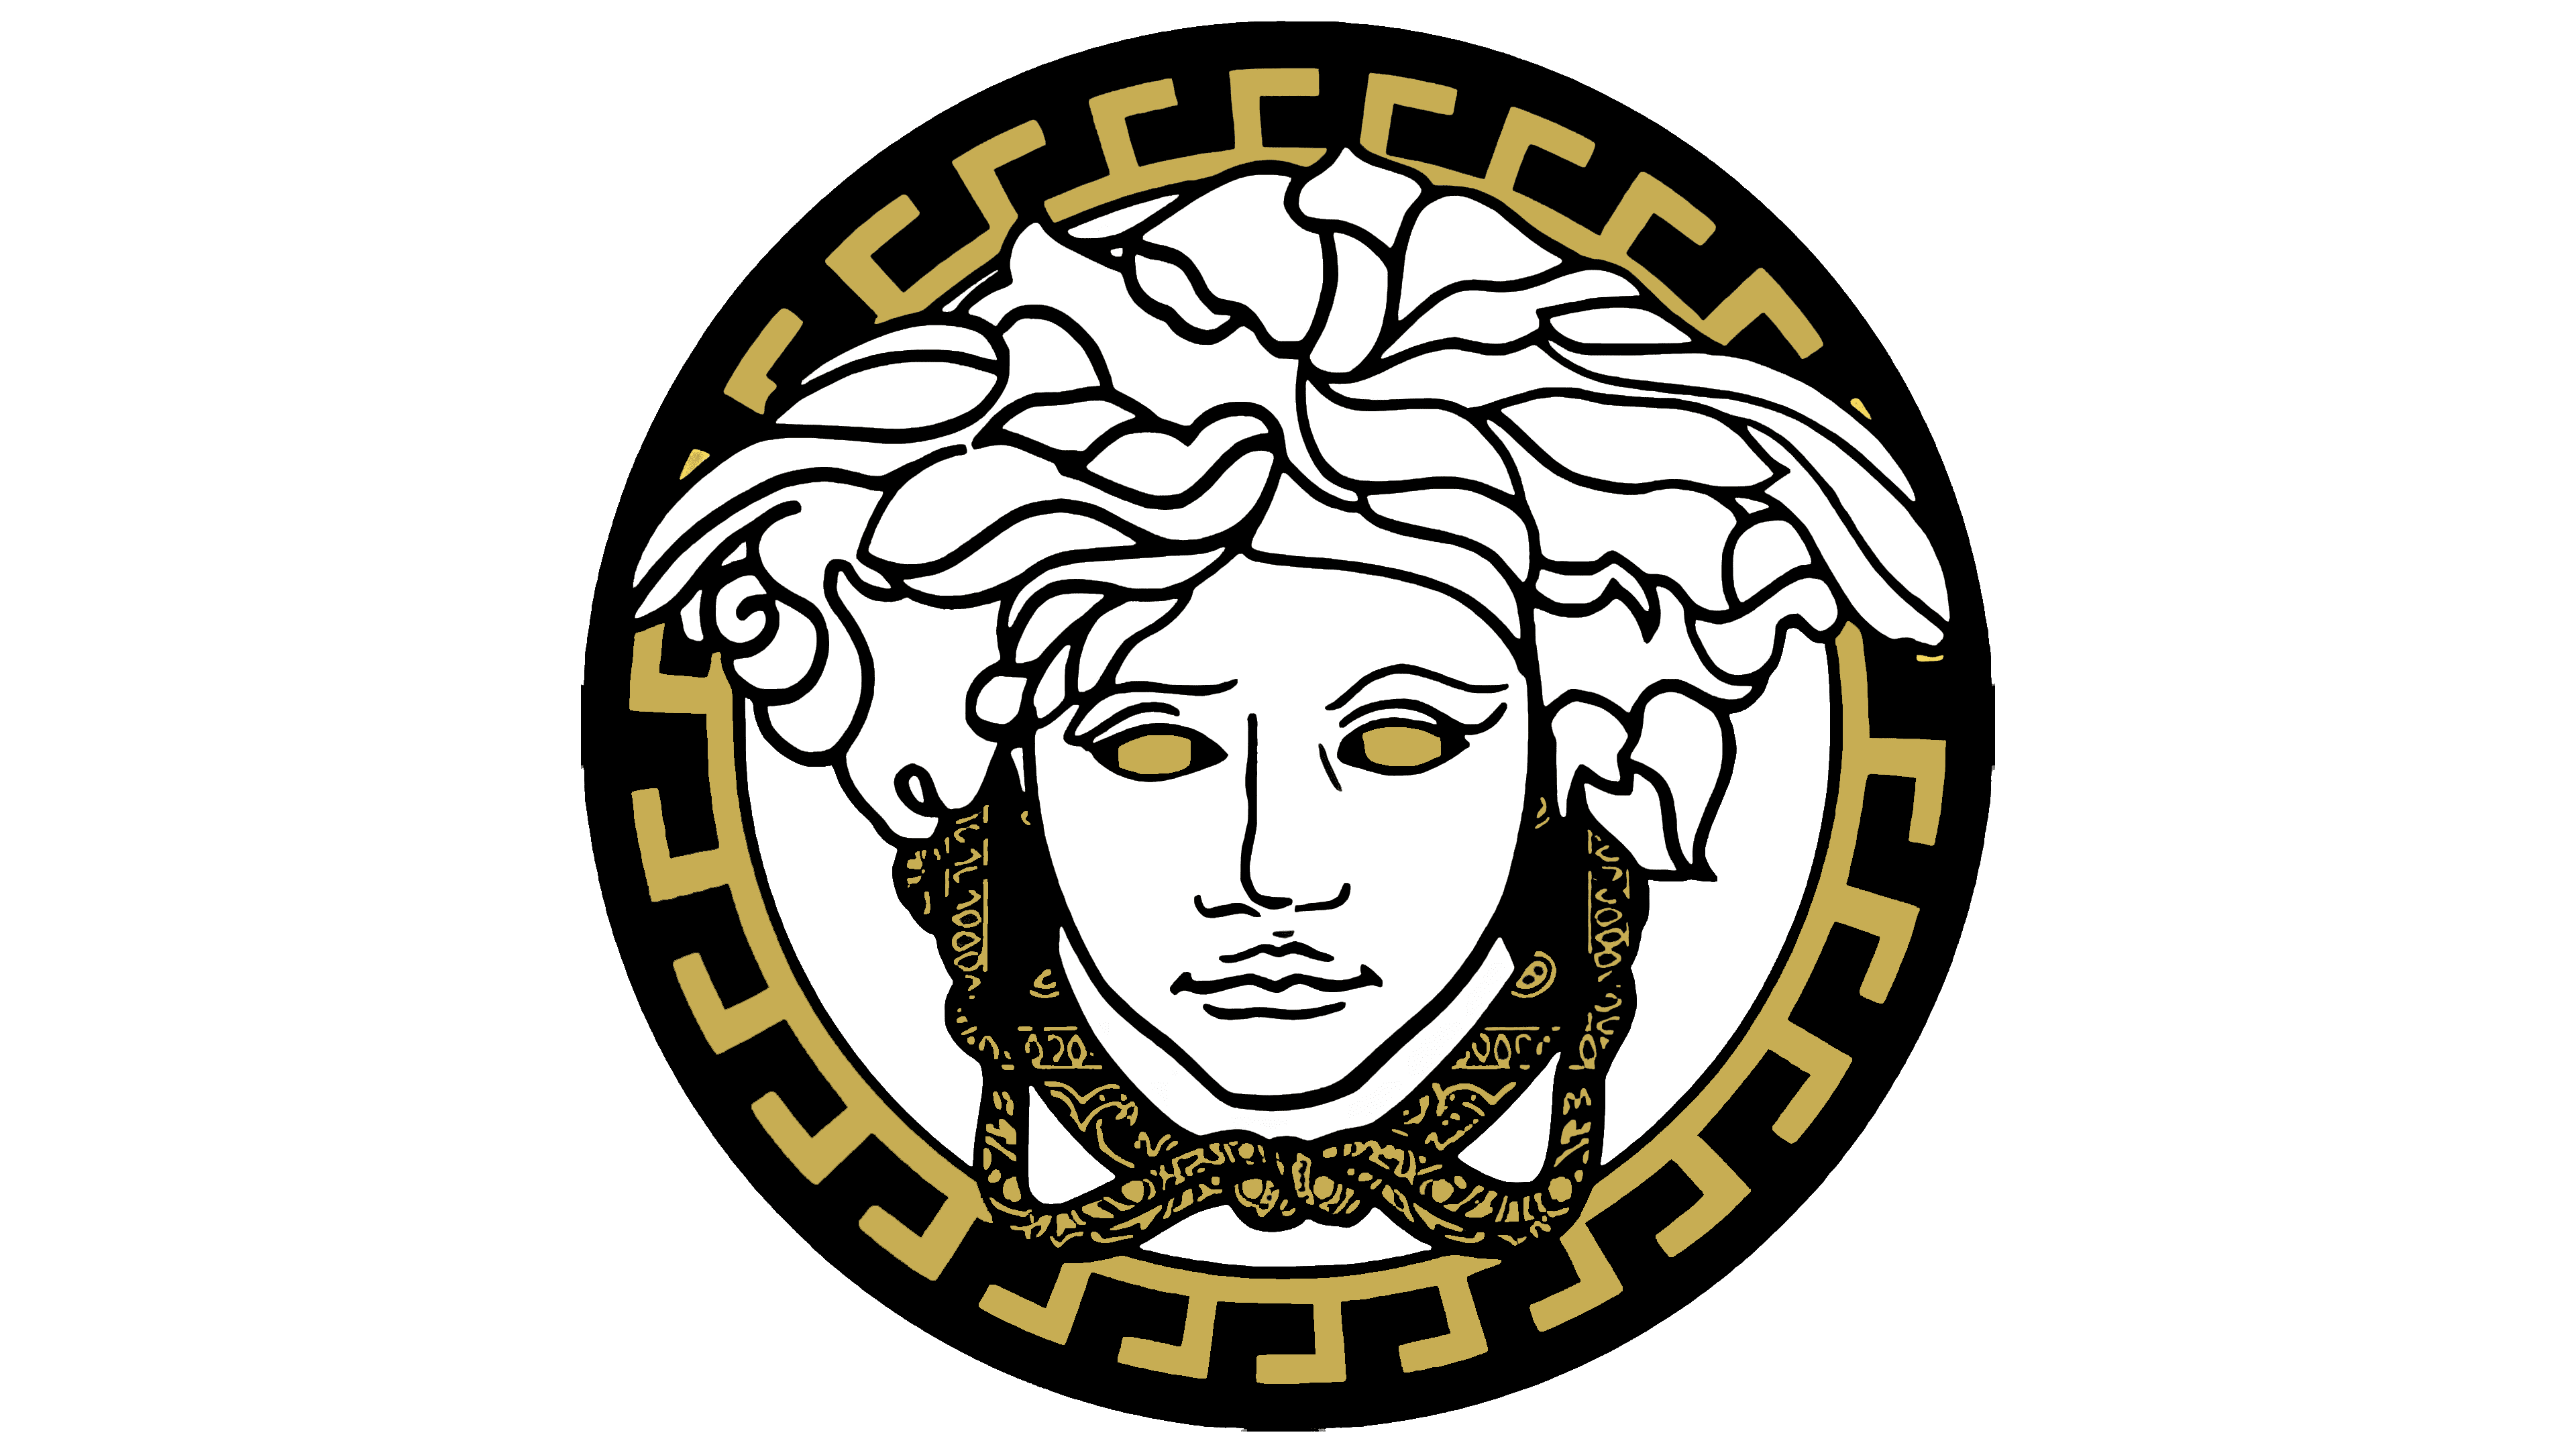 Versace Logo histoire, signification de l'emblème